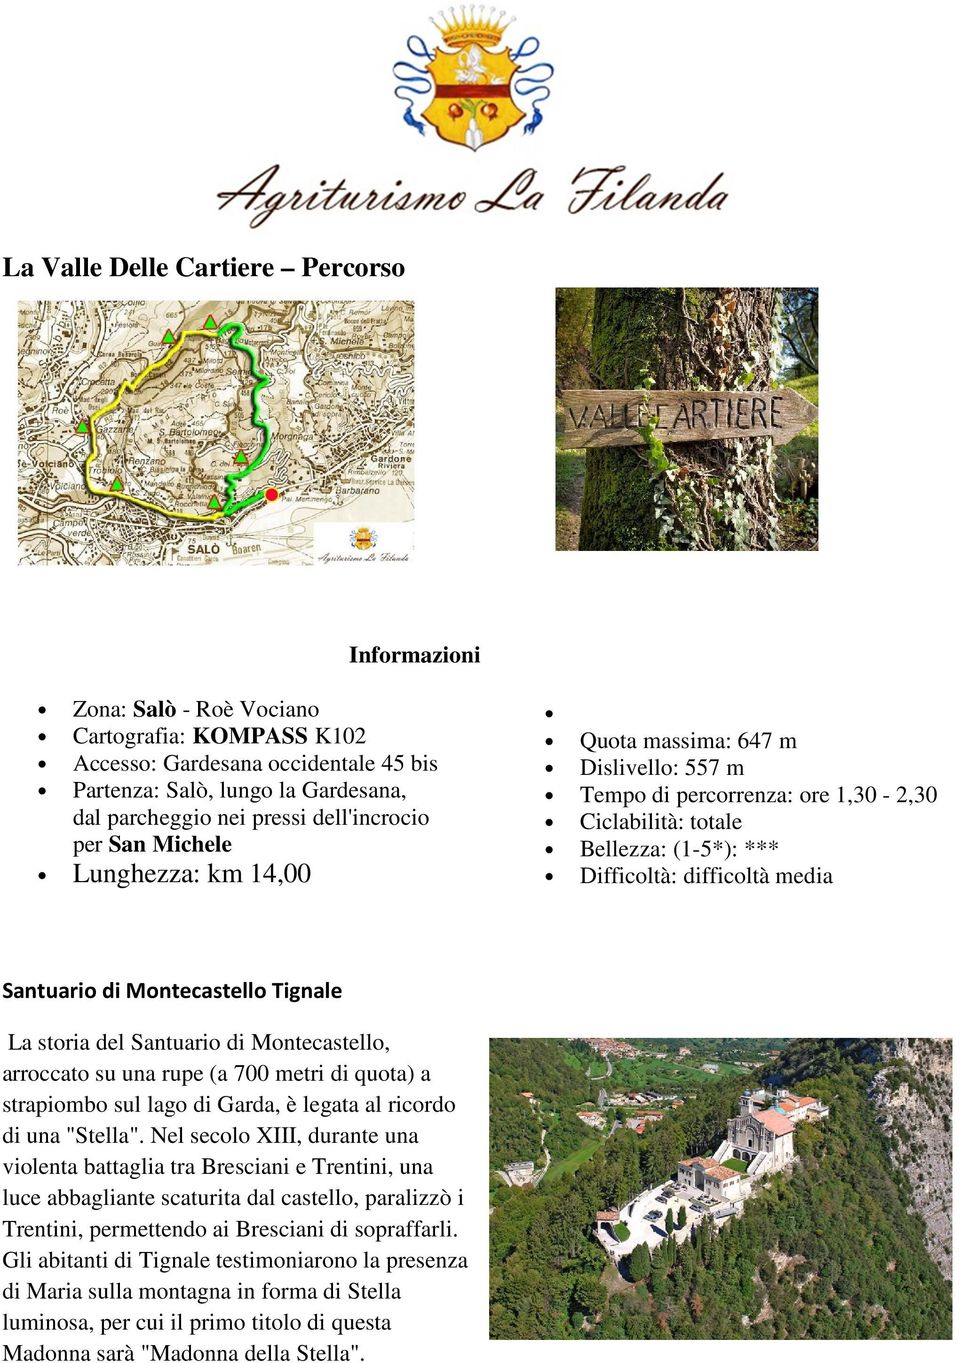 Santuario di Montecastello Tignale La storia del Santuario di Montecastello, arroccato su una rupe (a 700 metri di quota) a strapiombo sul lago di Garda, è legata al ricordo di una "Stella".